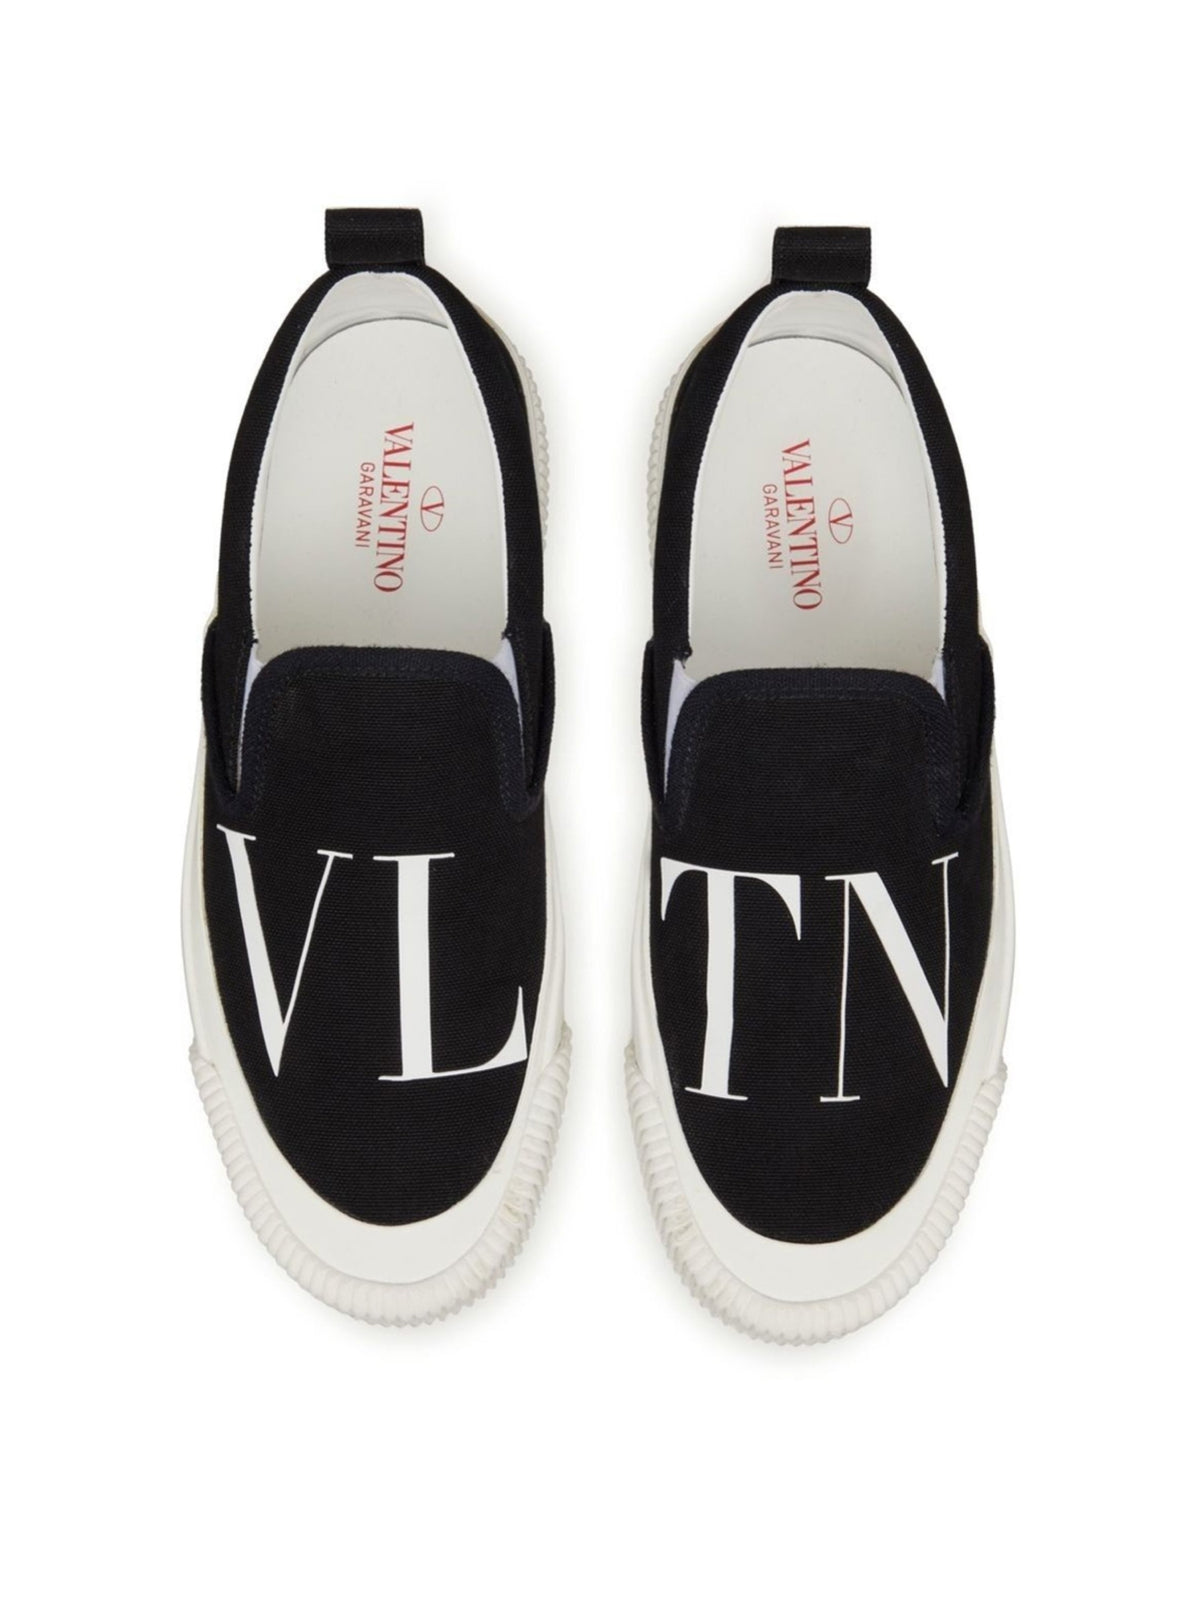 VLTN Logo Slip on Sneakers